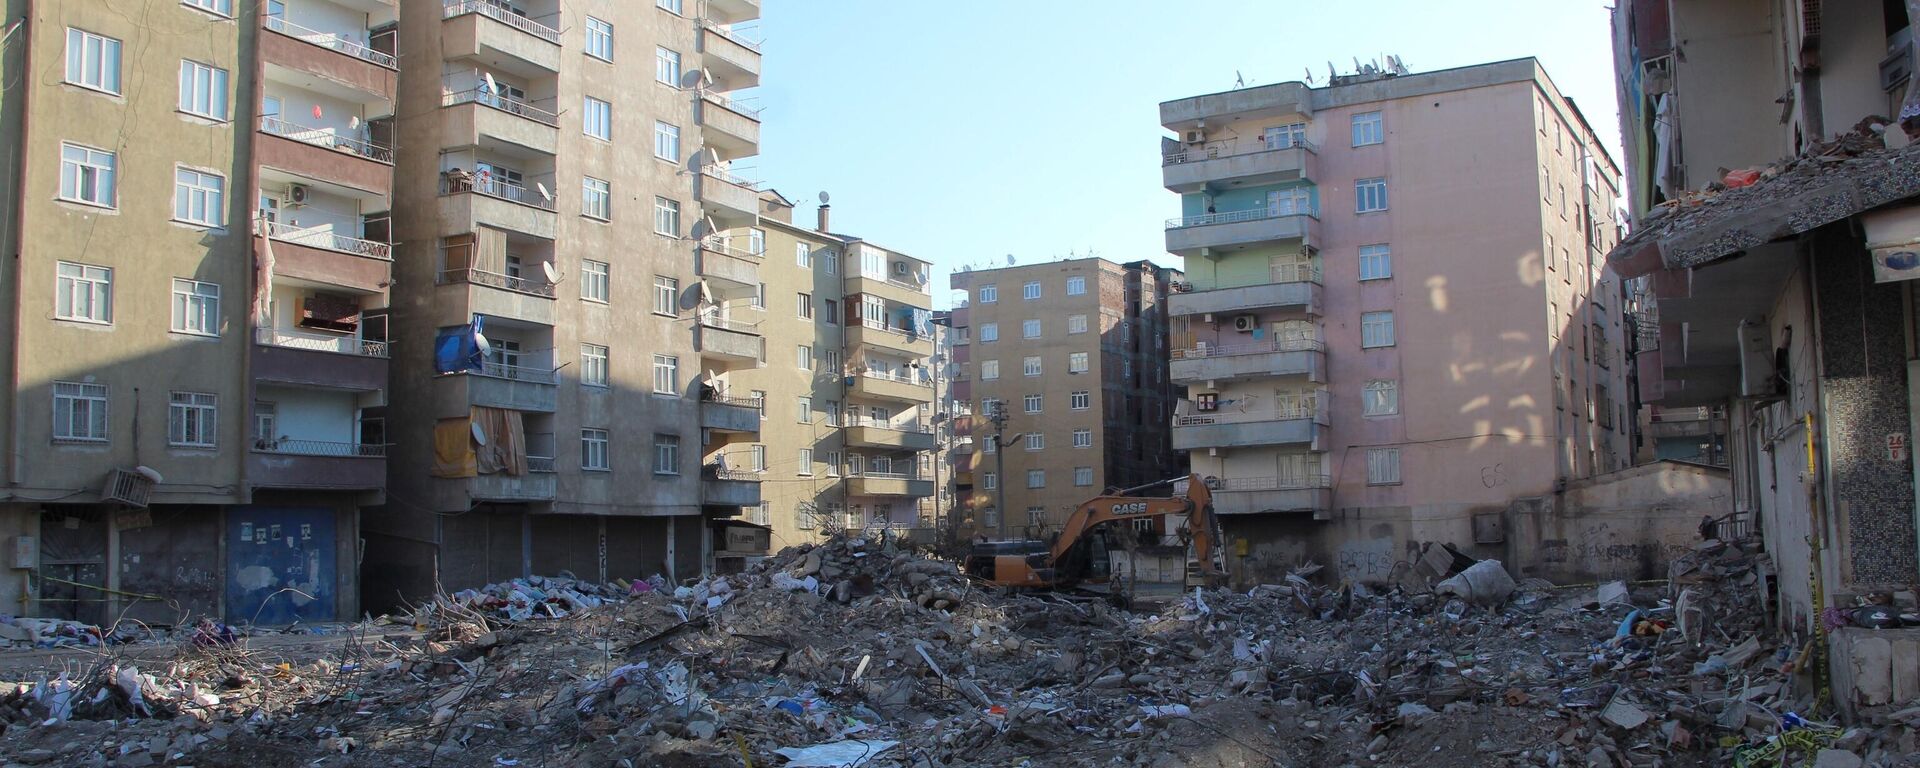 Diyarbakır'da, 6 Şubat'ta meydana gelen Kahramanmaraş merkezli depremlerde yıkılması sonucu 60 kişinin yaşamını yitirdiği Yoldaş Apartmanı'na ilişkin kapsamlı bilirkişi raporu hazırlandı. Yapının, ruhsatsız ve projesiz inşa edildiği belirlendi. - Sputnik Türkiye, 1920, 20.09.2023